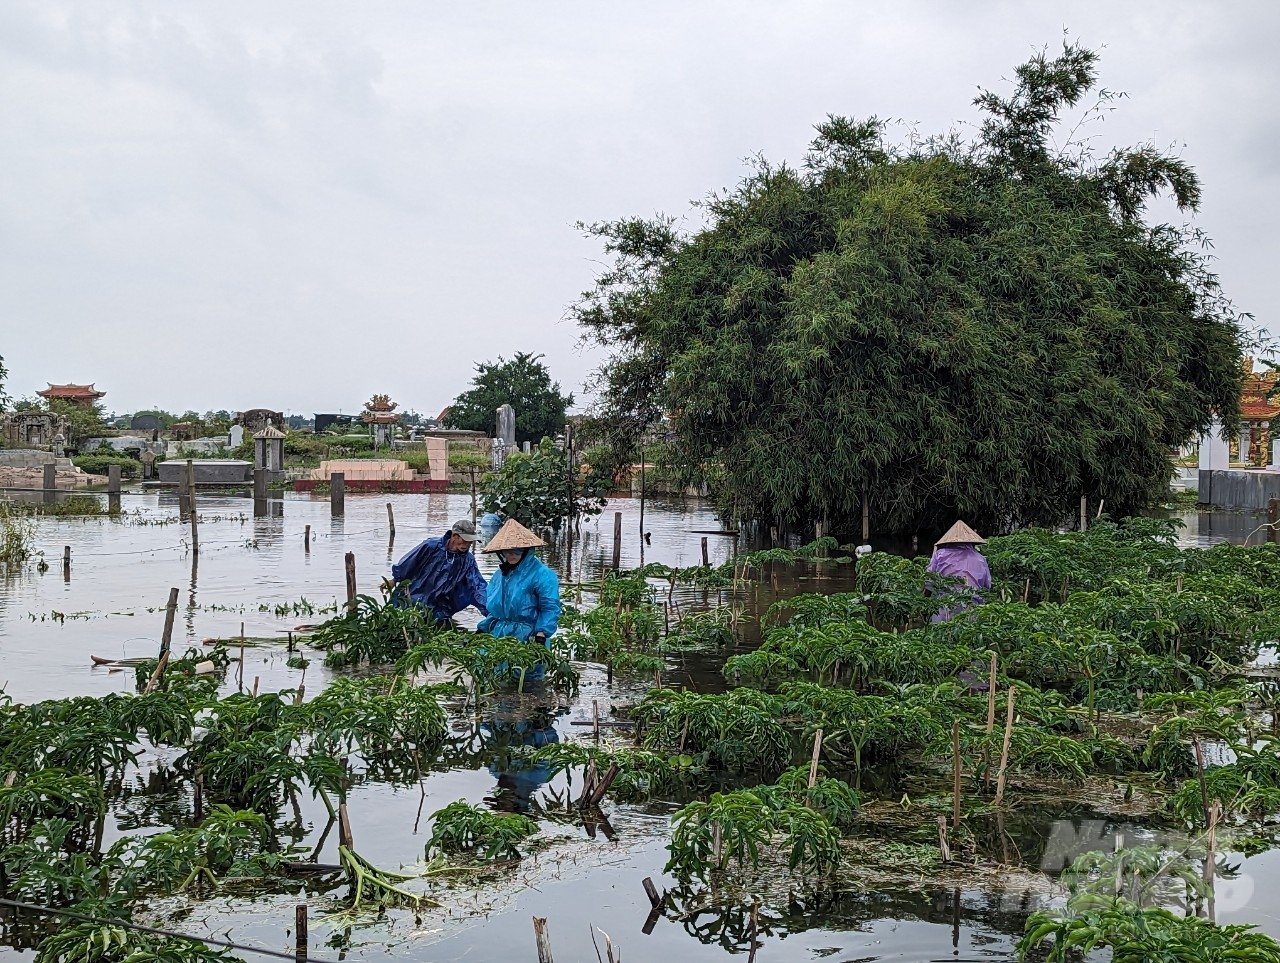 Từ sáng 15/10 tại tỉnh Thừa Thiên Huế đã ngừng mưa. Thời tiết tốt dần nên nông dân tranh thủ ra đồng thu hoạch các loại cây trồng.